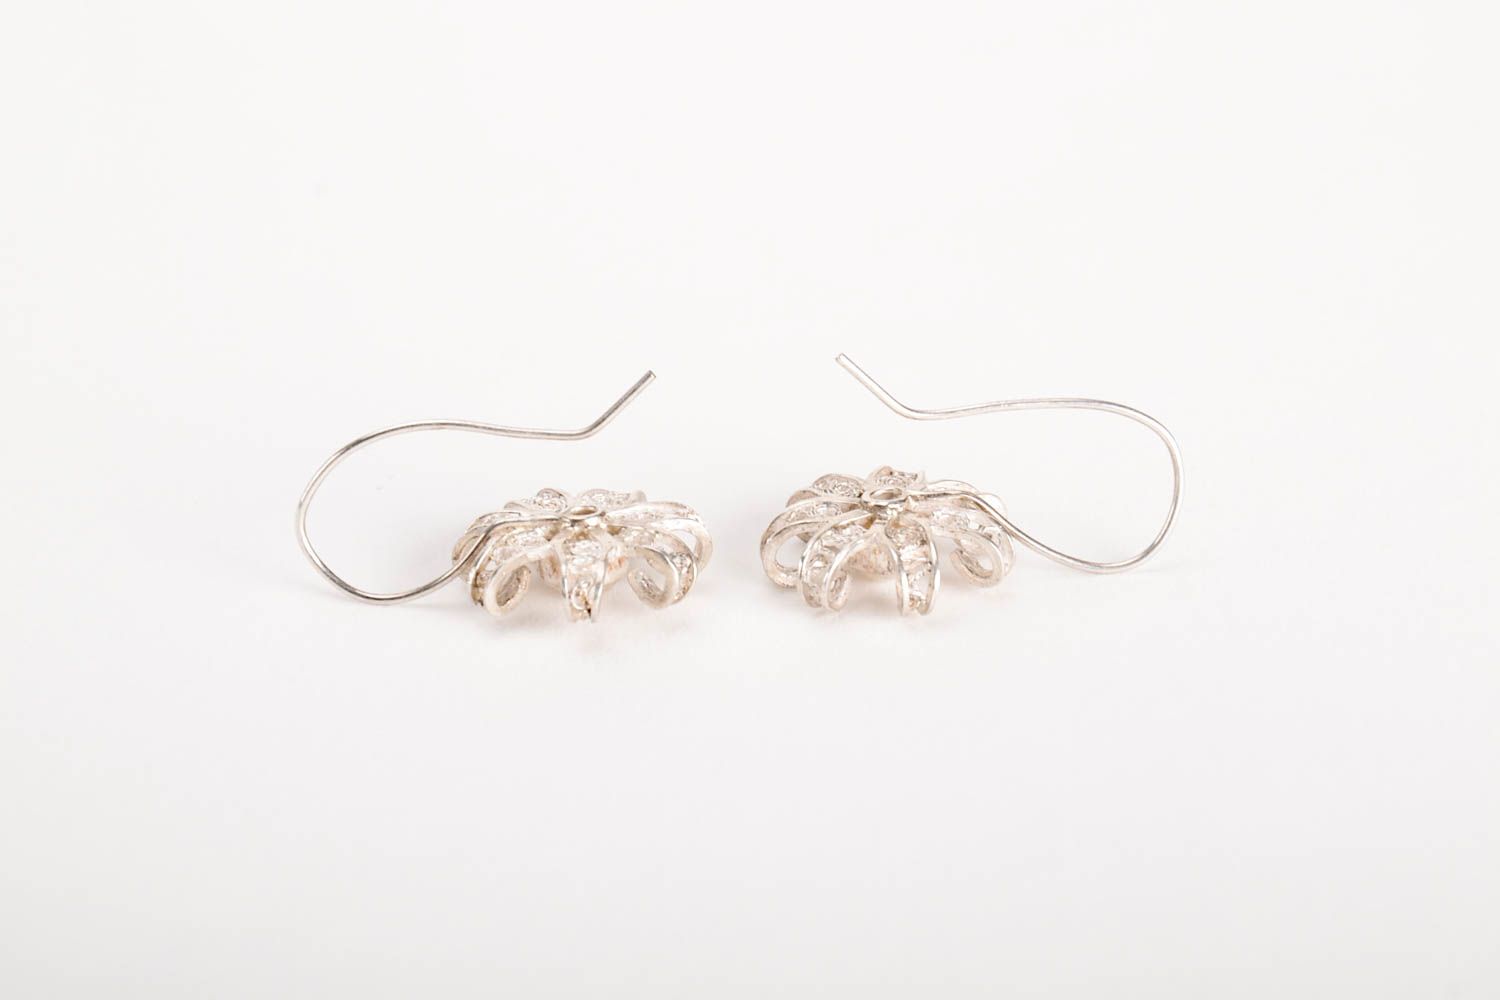 Handmade silver earrings designer earrings unusual gift for women silver jewelry photo 3